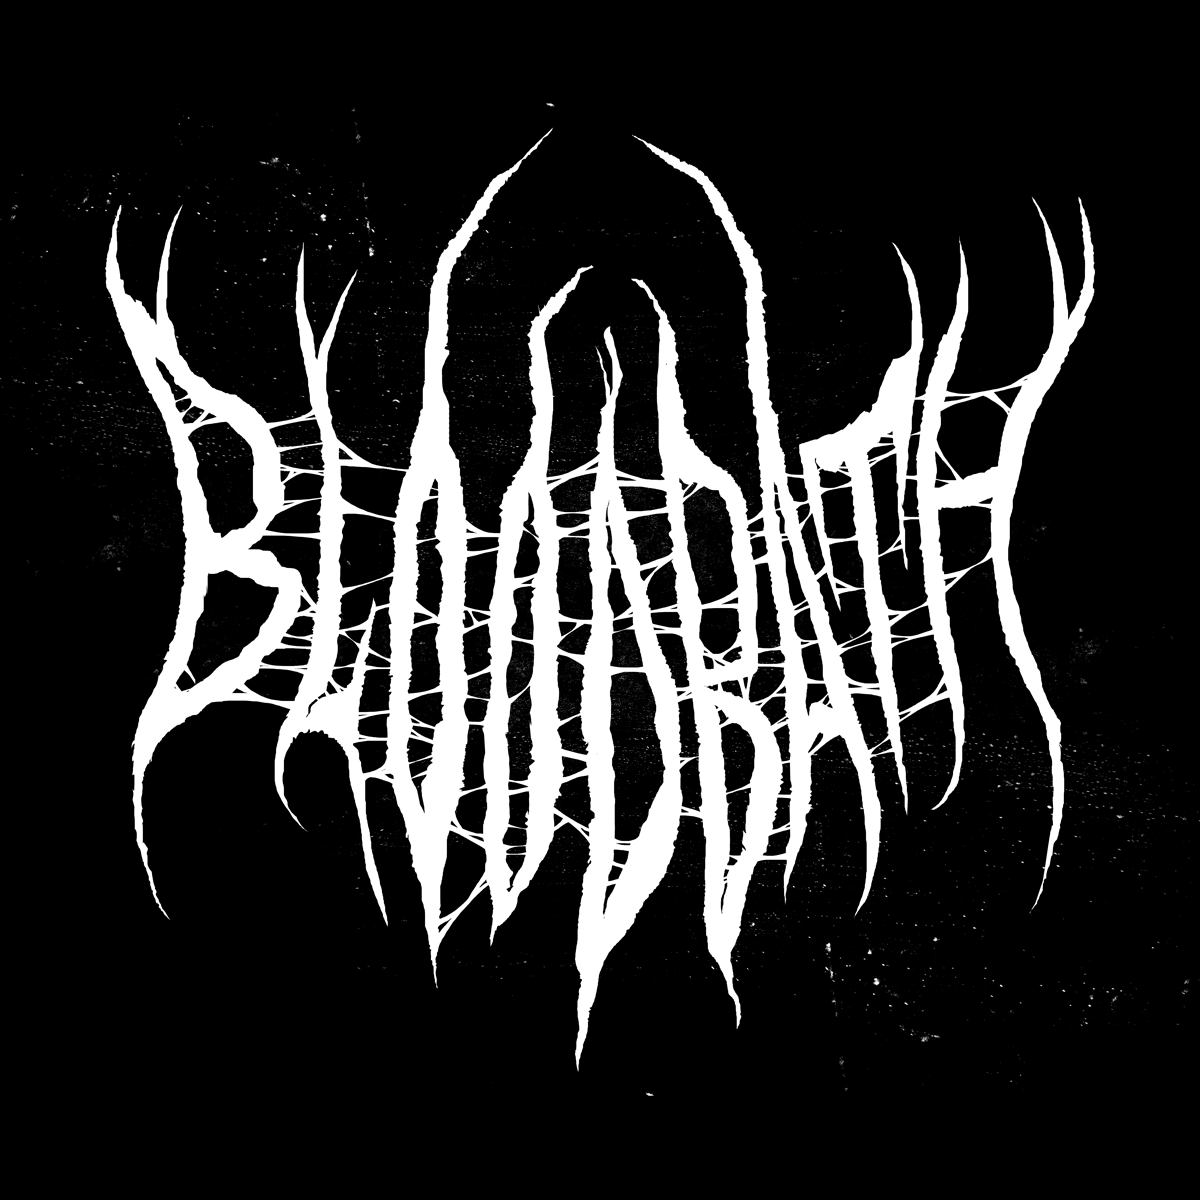 Bloodbath gothic literary publication hand-drawn logotype